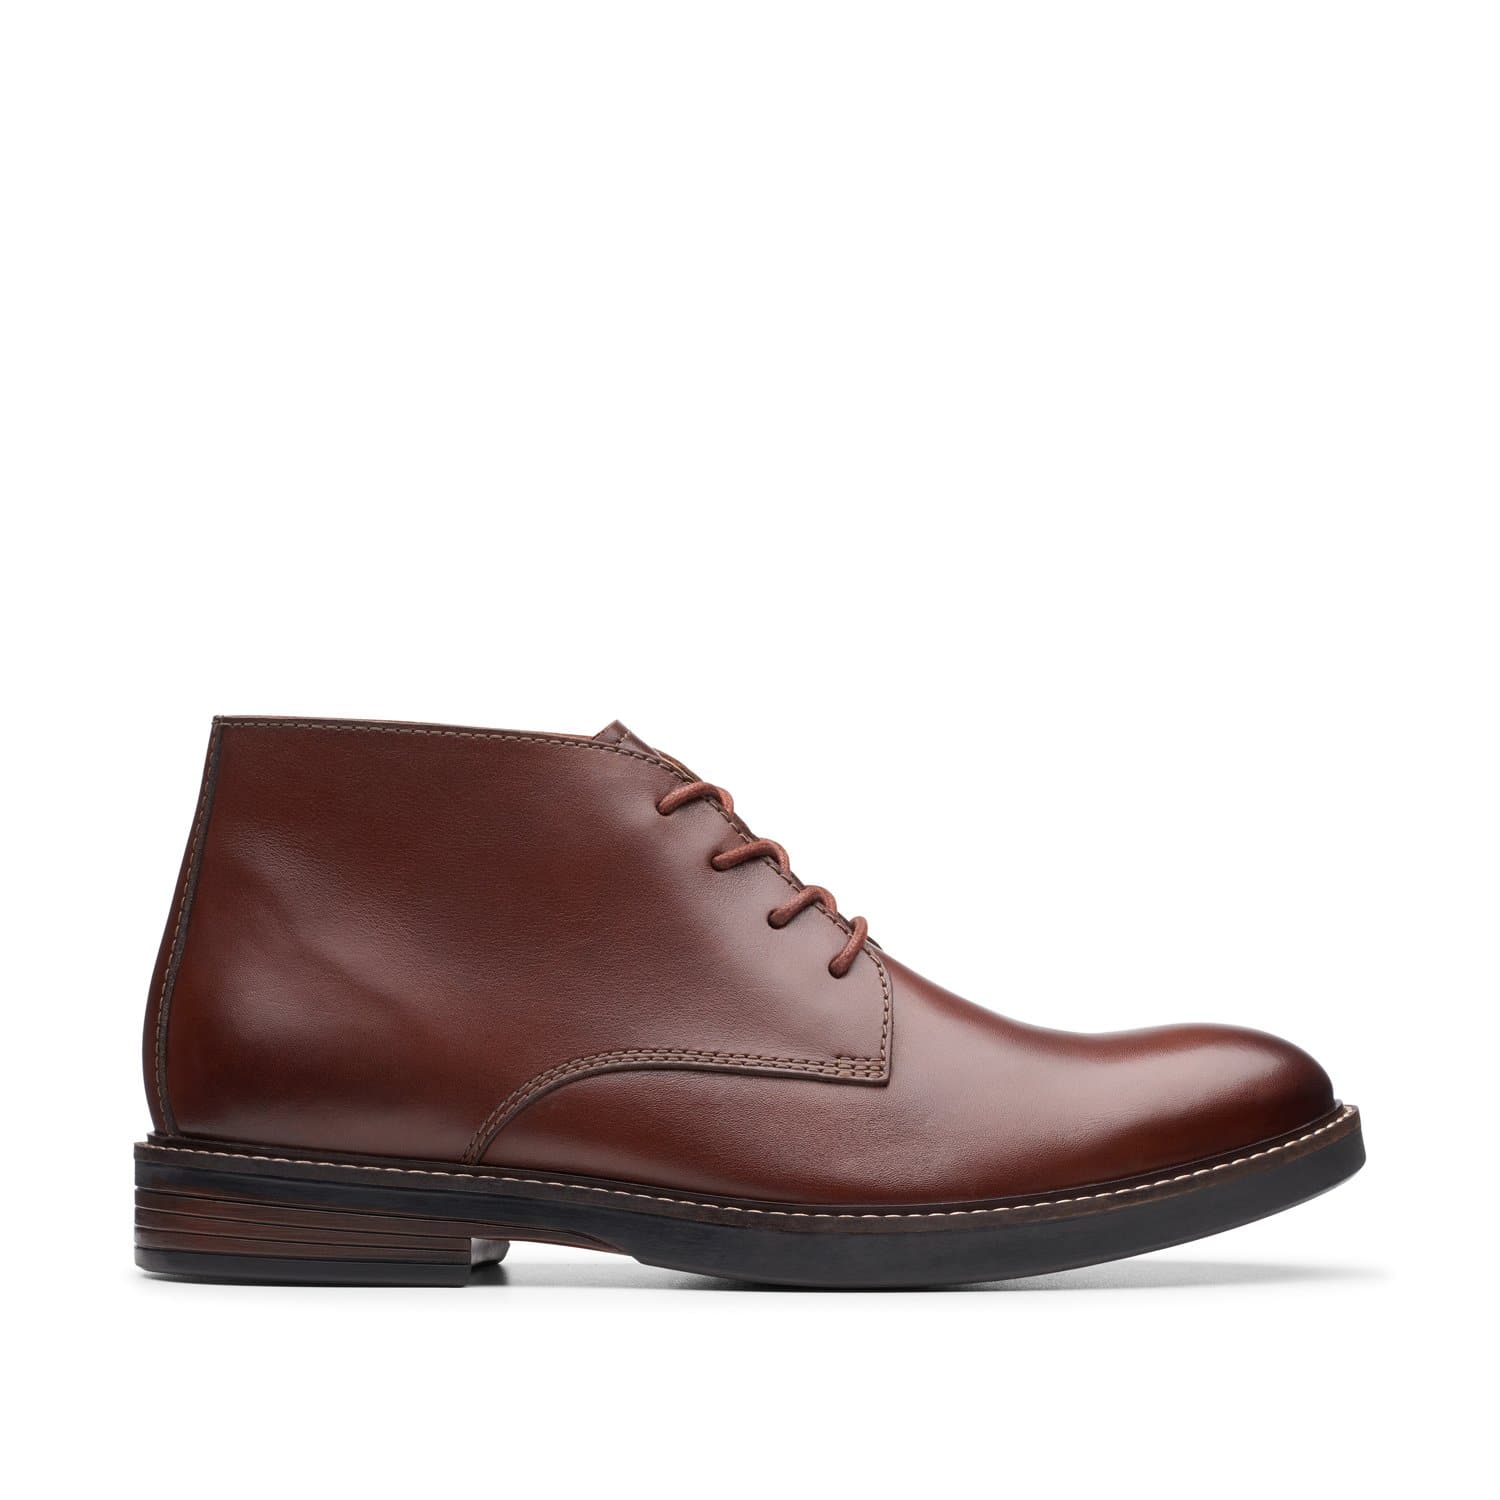 Clarks-Paulson-Mid-Men's-Boots-Mahogany-Leather-26144781